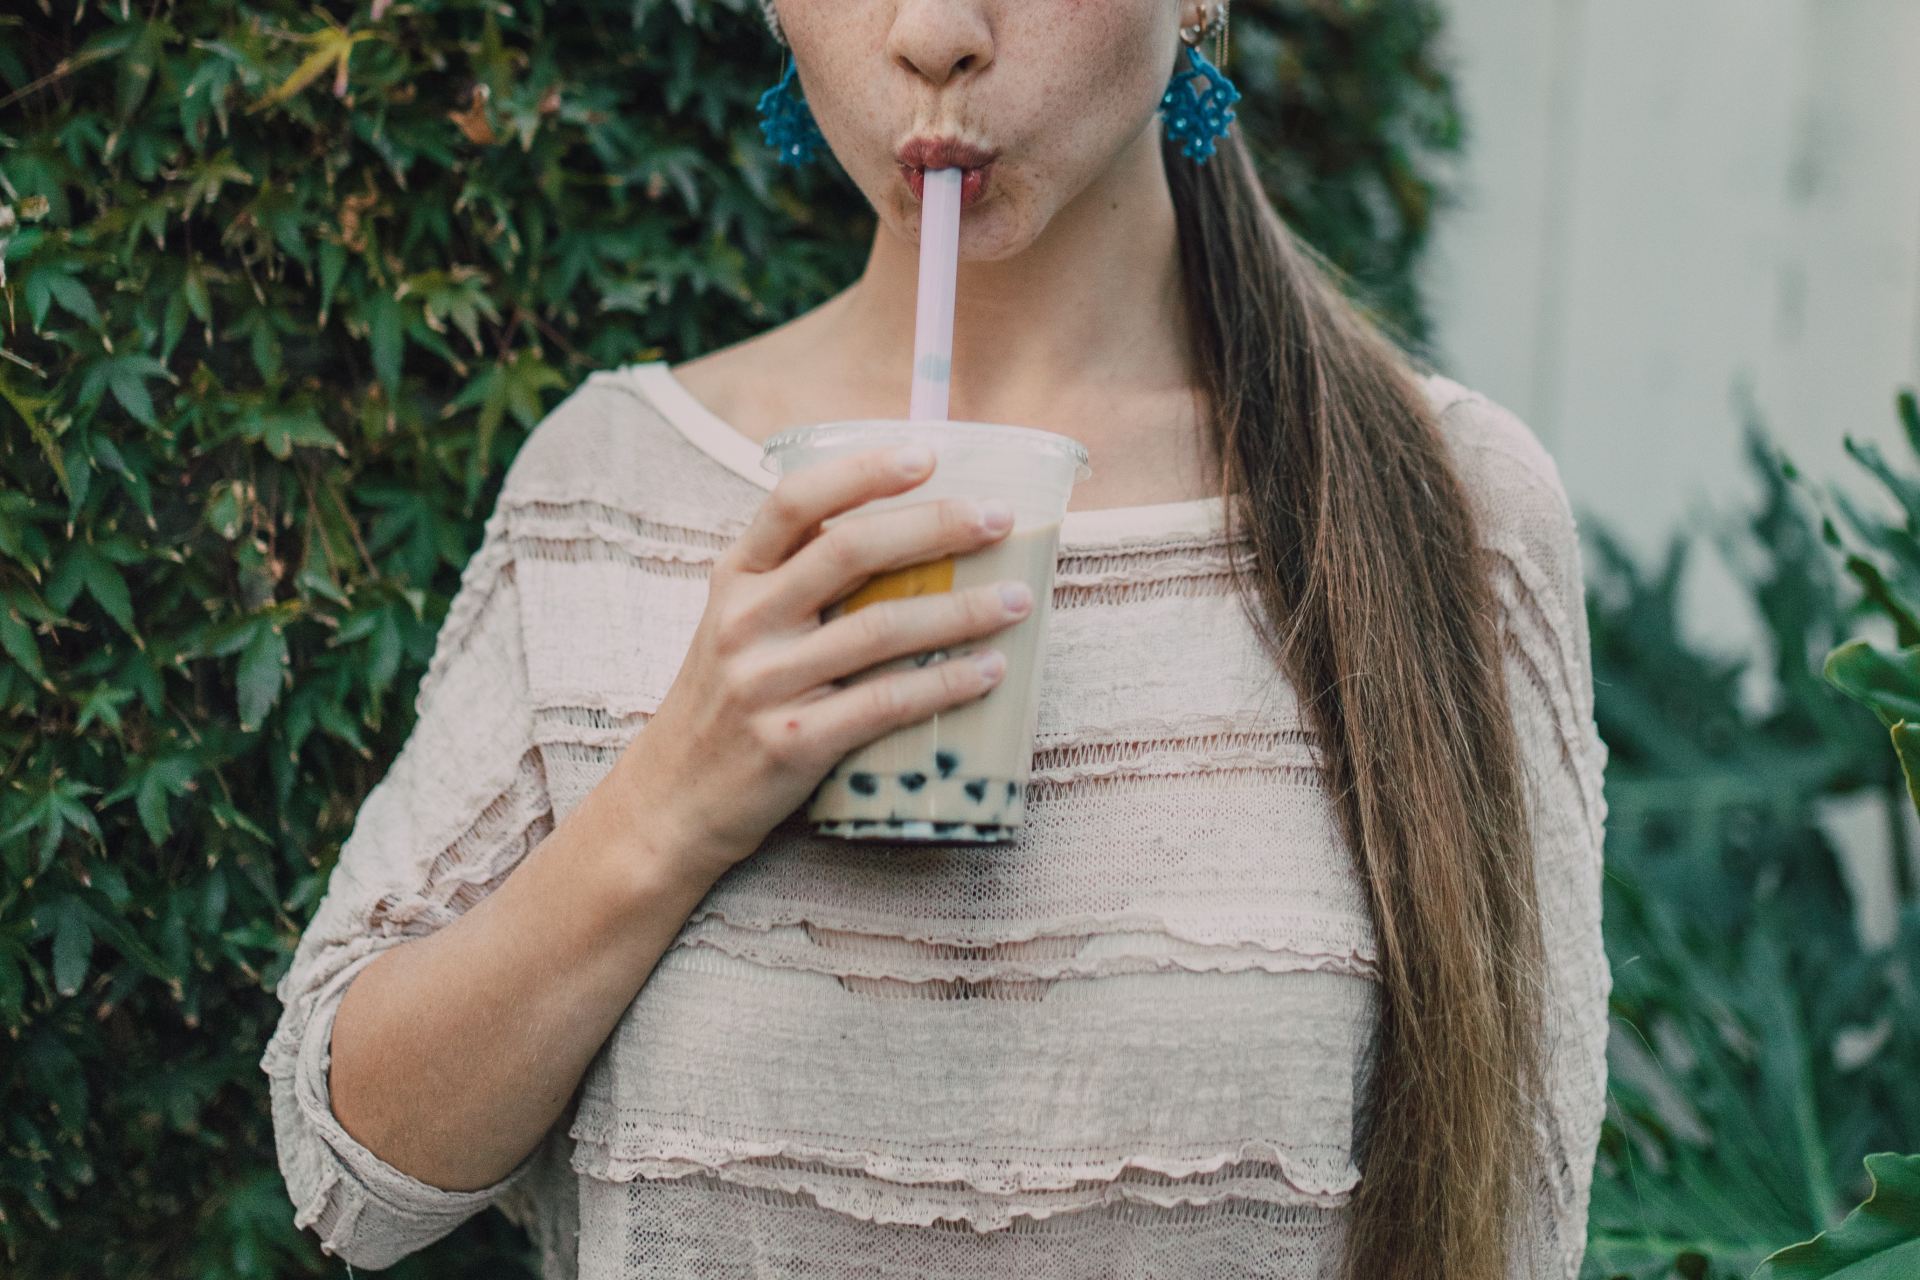 A person drinking boba tea